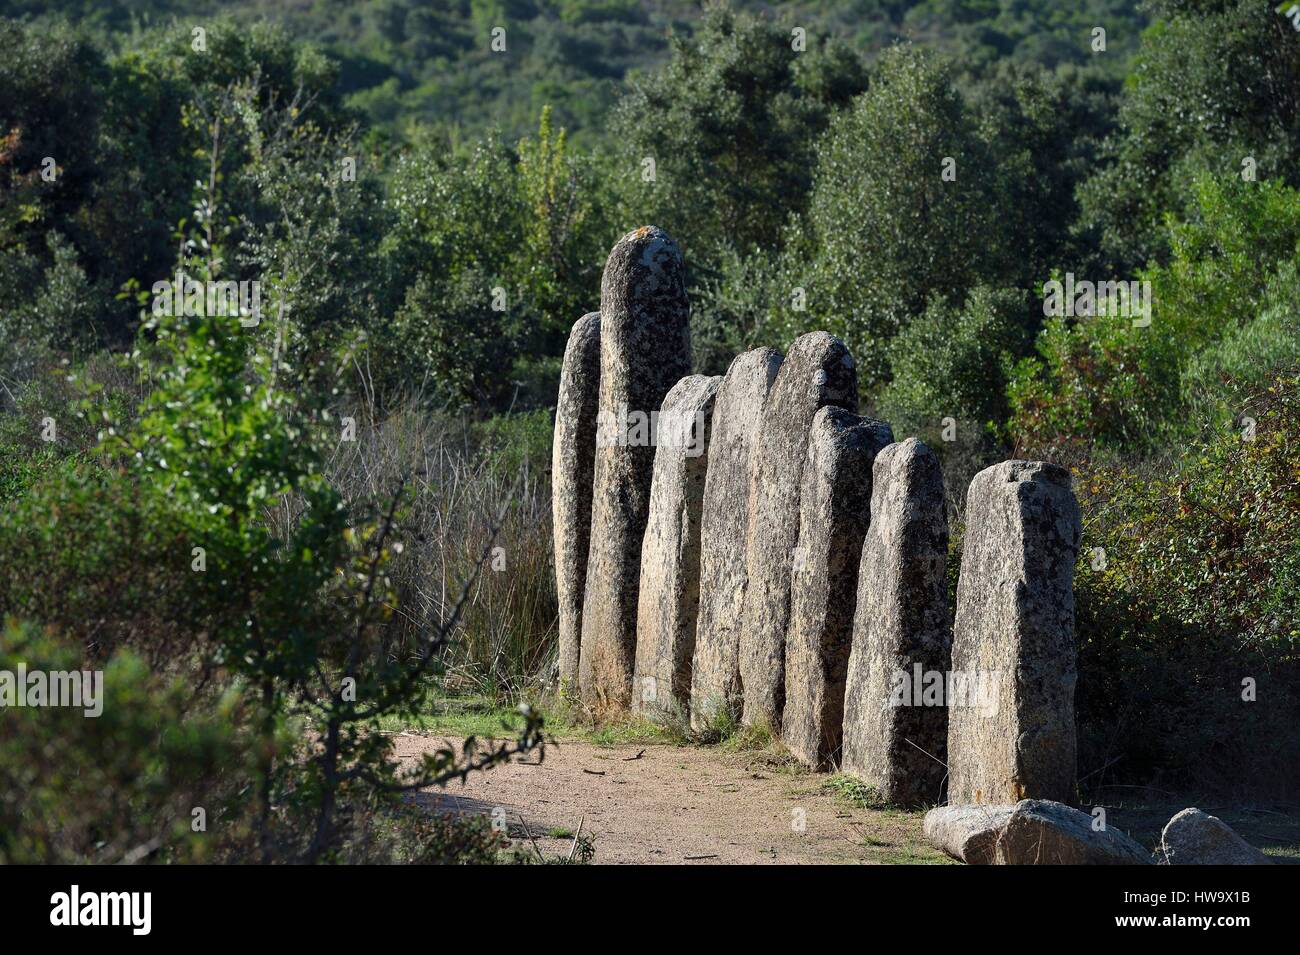 Francia, Corse du Sud, Sartène, allineamento di menhir di Palaggiu (Pagliaju), eretto tra il 1900 e il 1000 A.C. con la sua 258 menhir, è il più importante della regione mediterranea Foto Stock